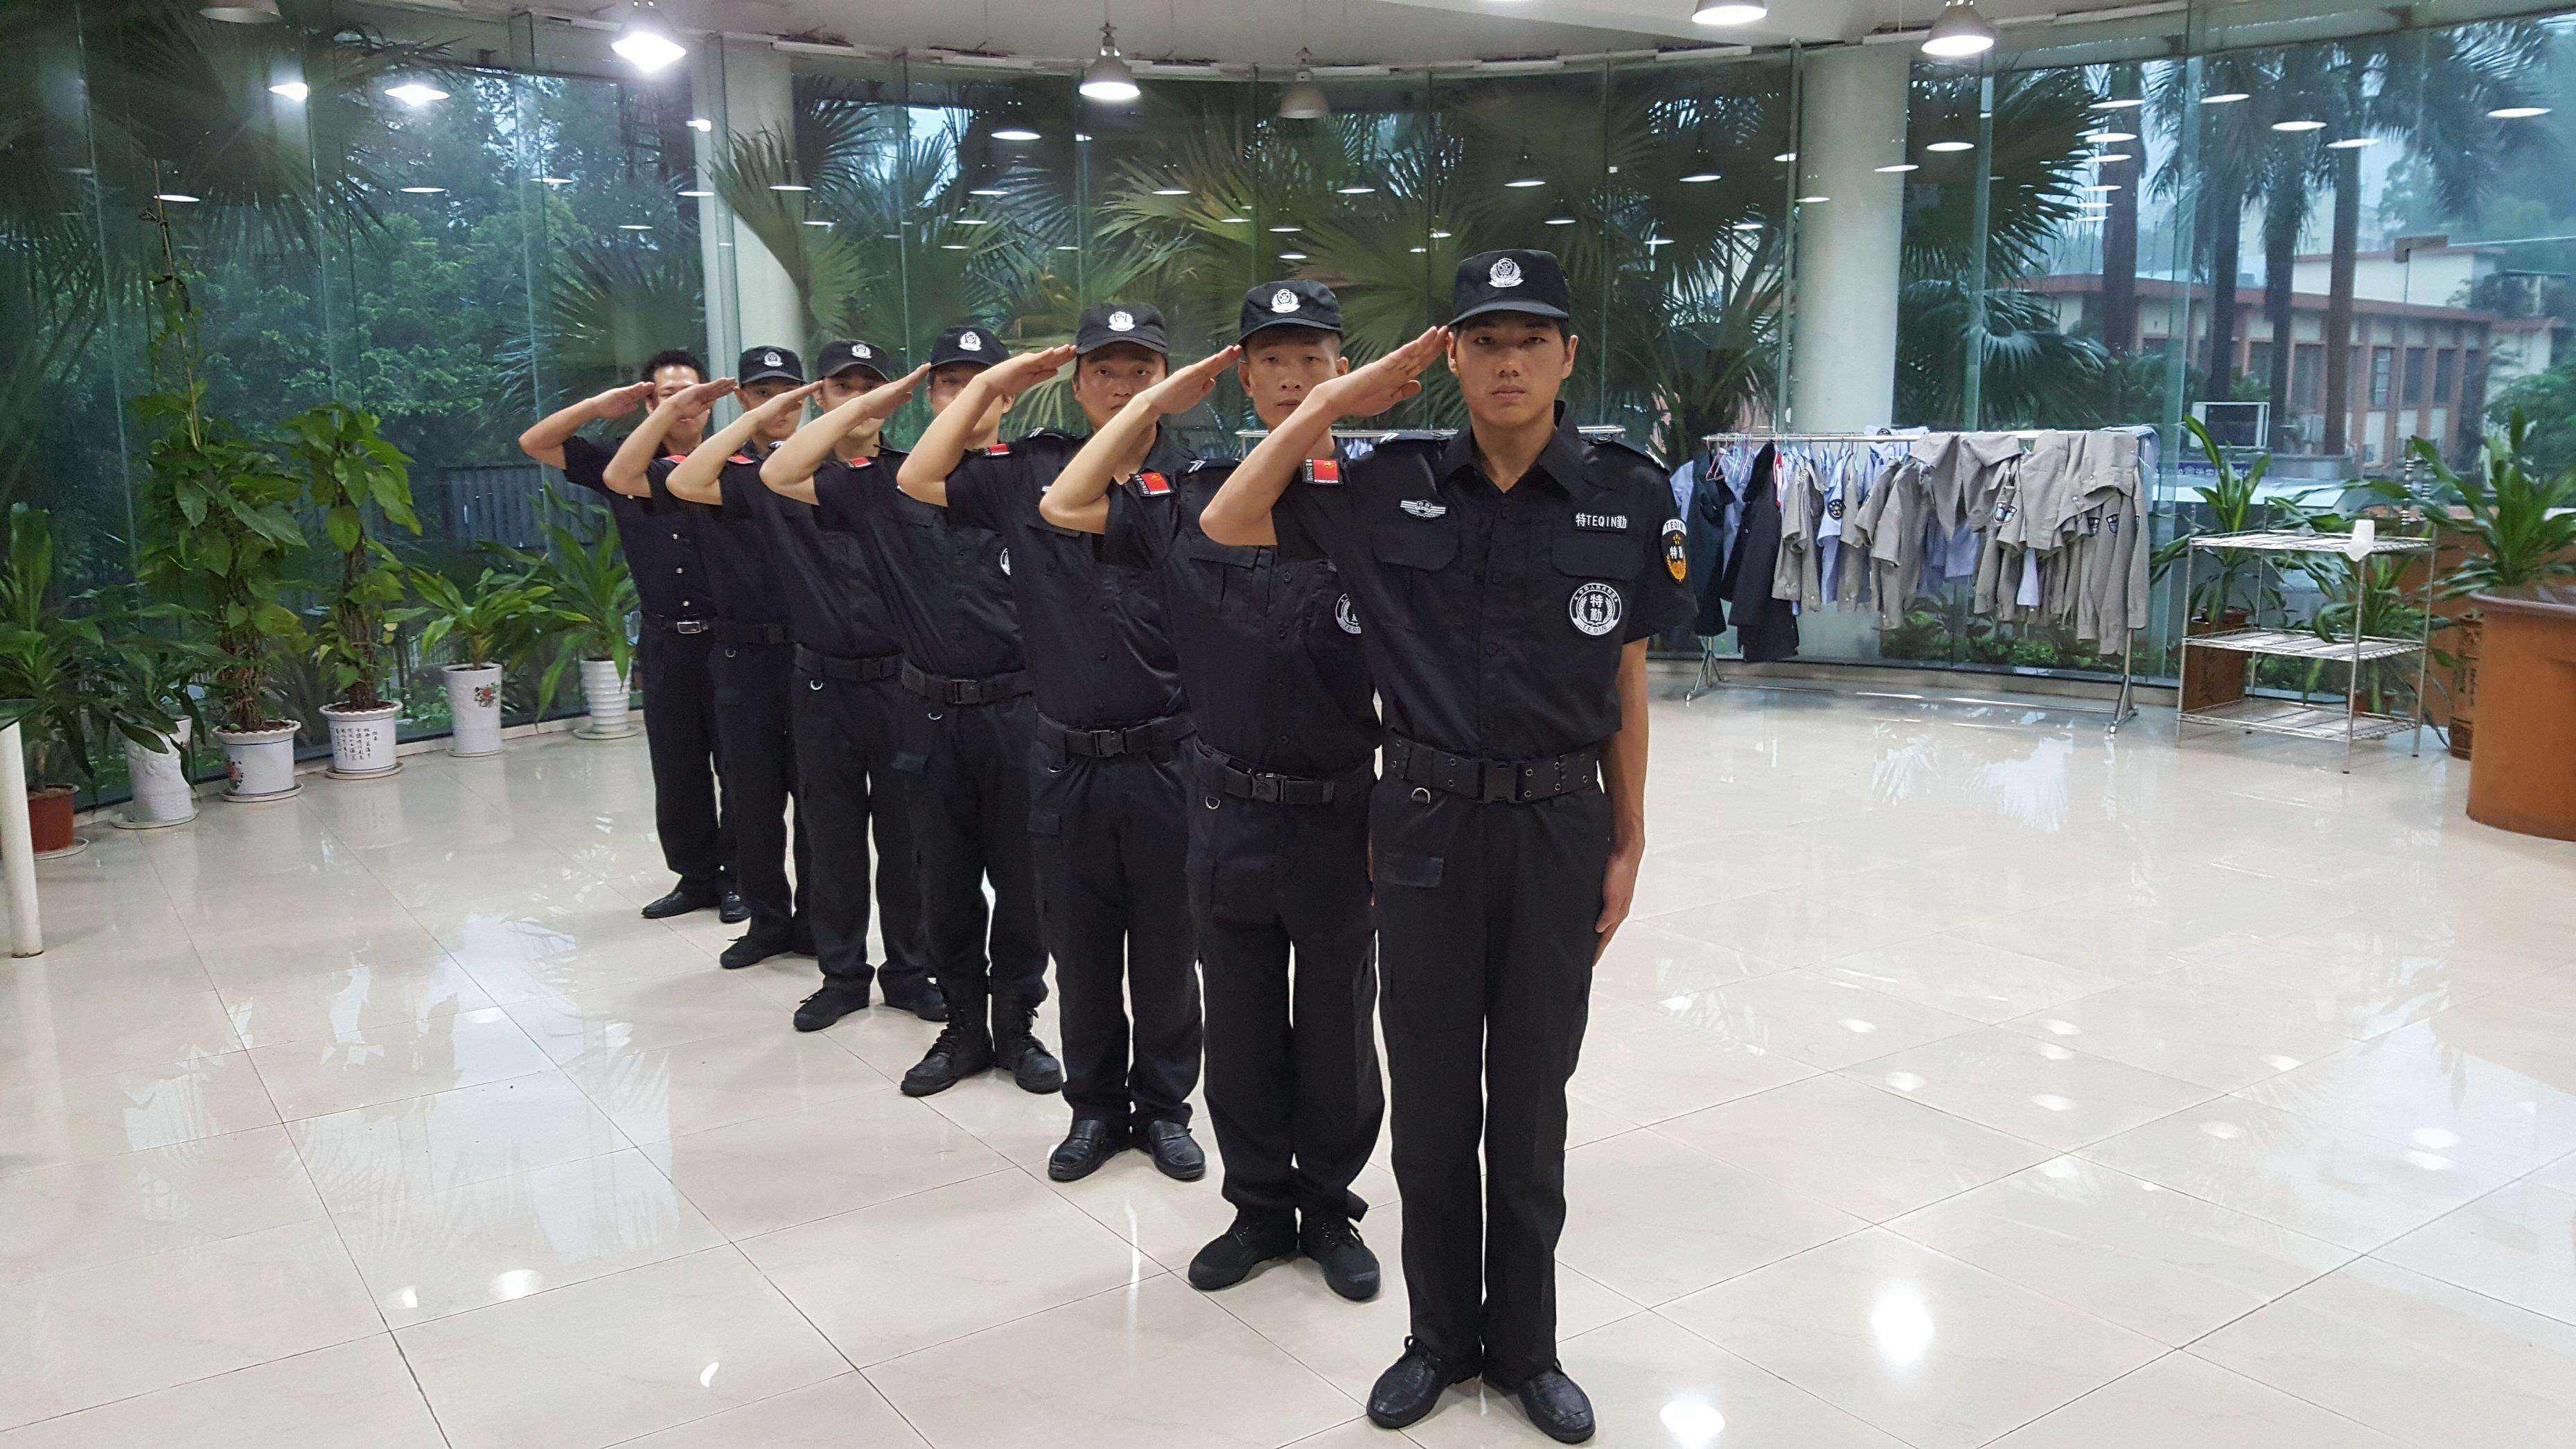 贵州中特保安服务有限公司制定《保安员岗前培训方案》